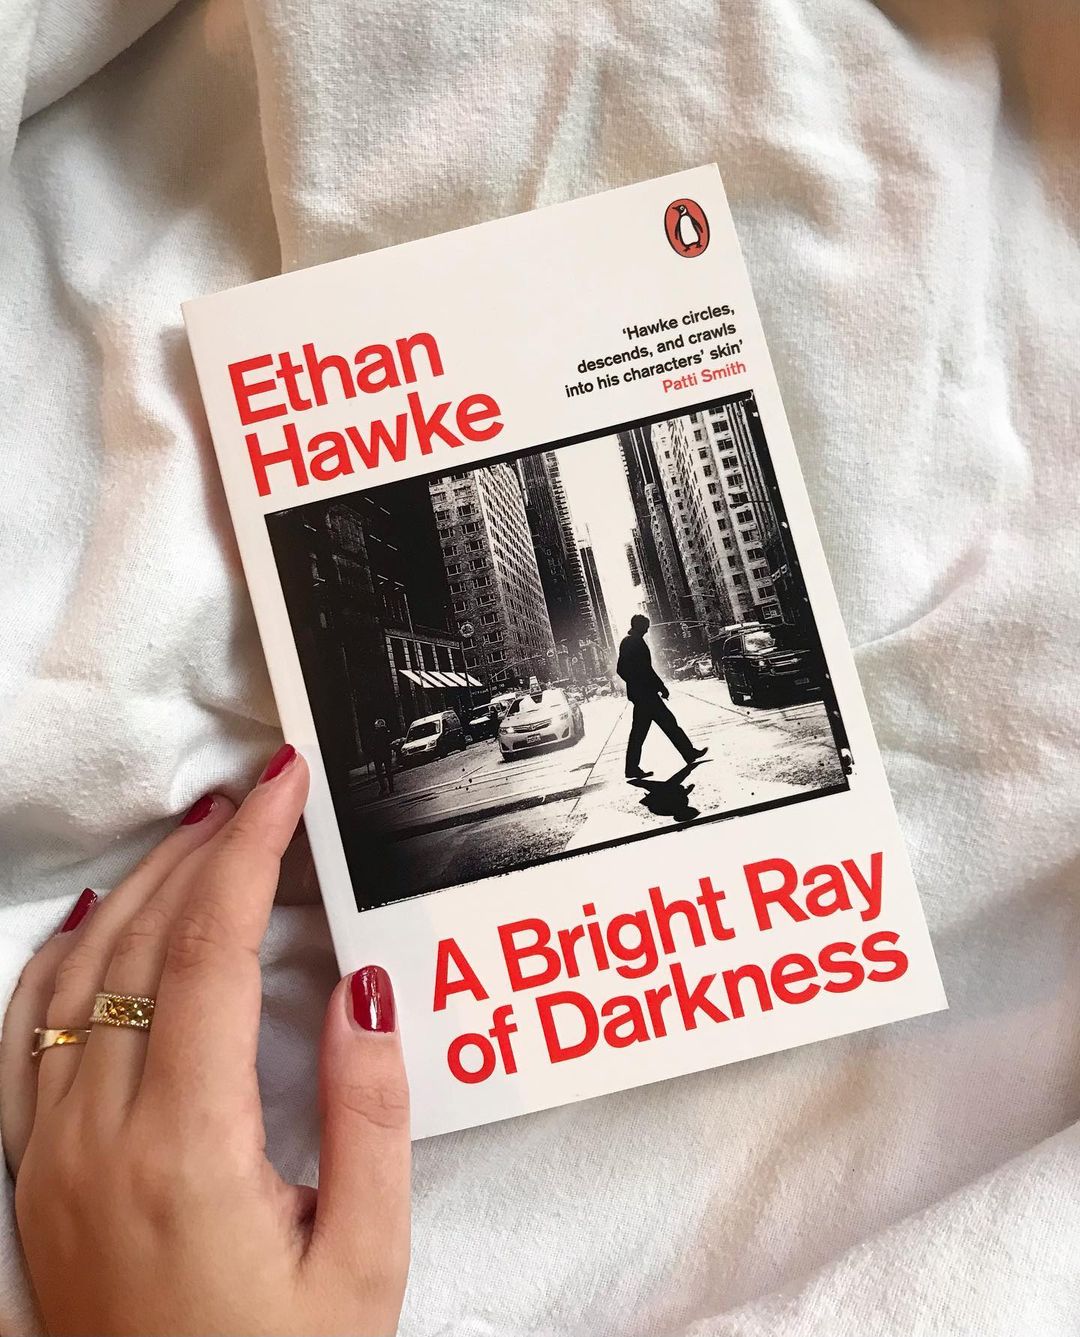 Veste, da je Ethan Hawke tudi uspešen pisatelj? Ilina Cenov prinaša recenzijo njegove najnovejše knjige